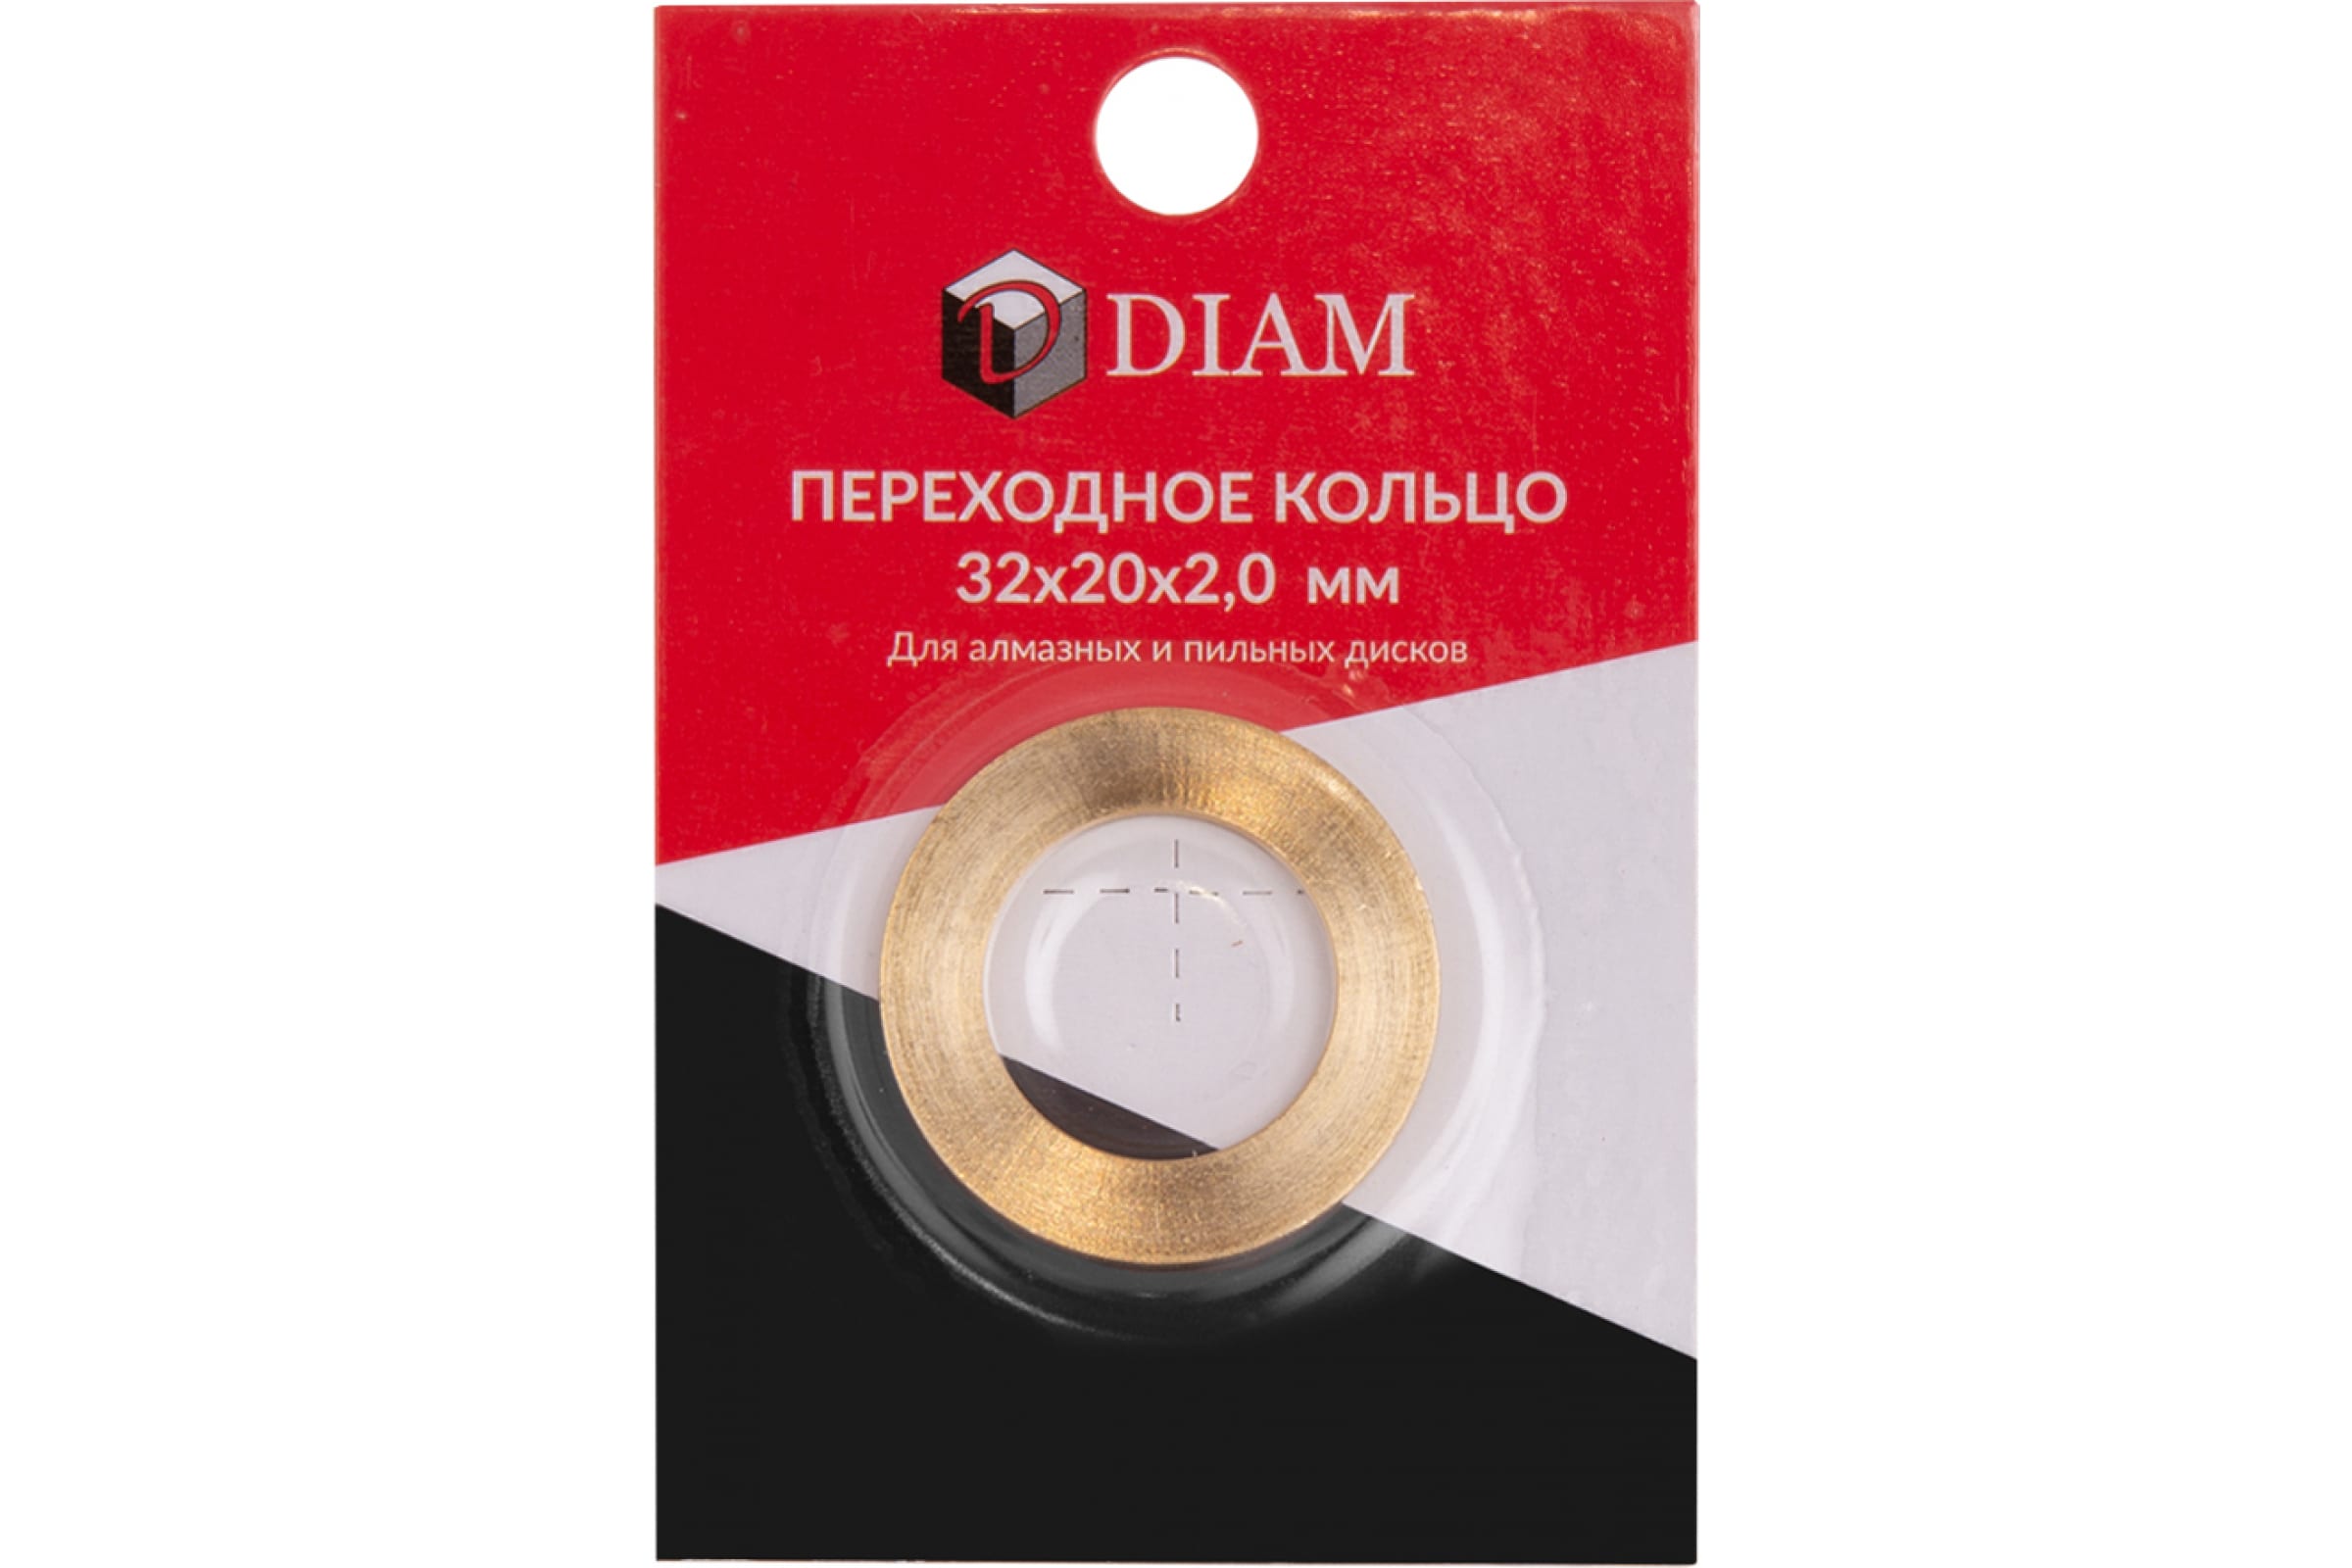 DIAM Переходное кольцо 32х20х2,0 640085 стопорное кольцо для пневматического насоса diam 42 piusi